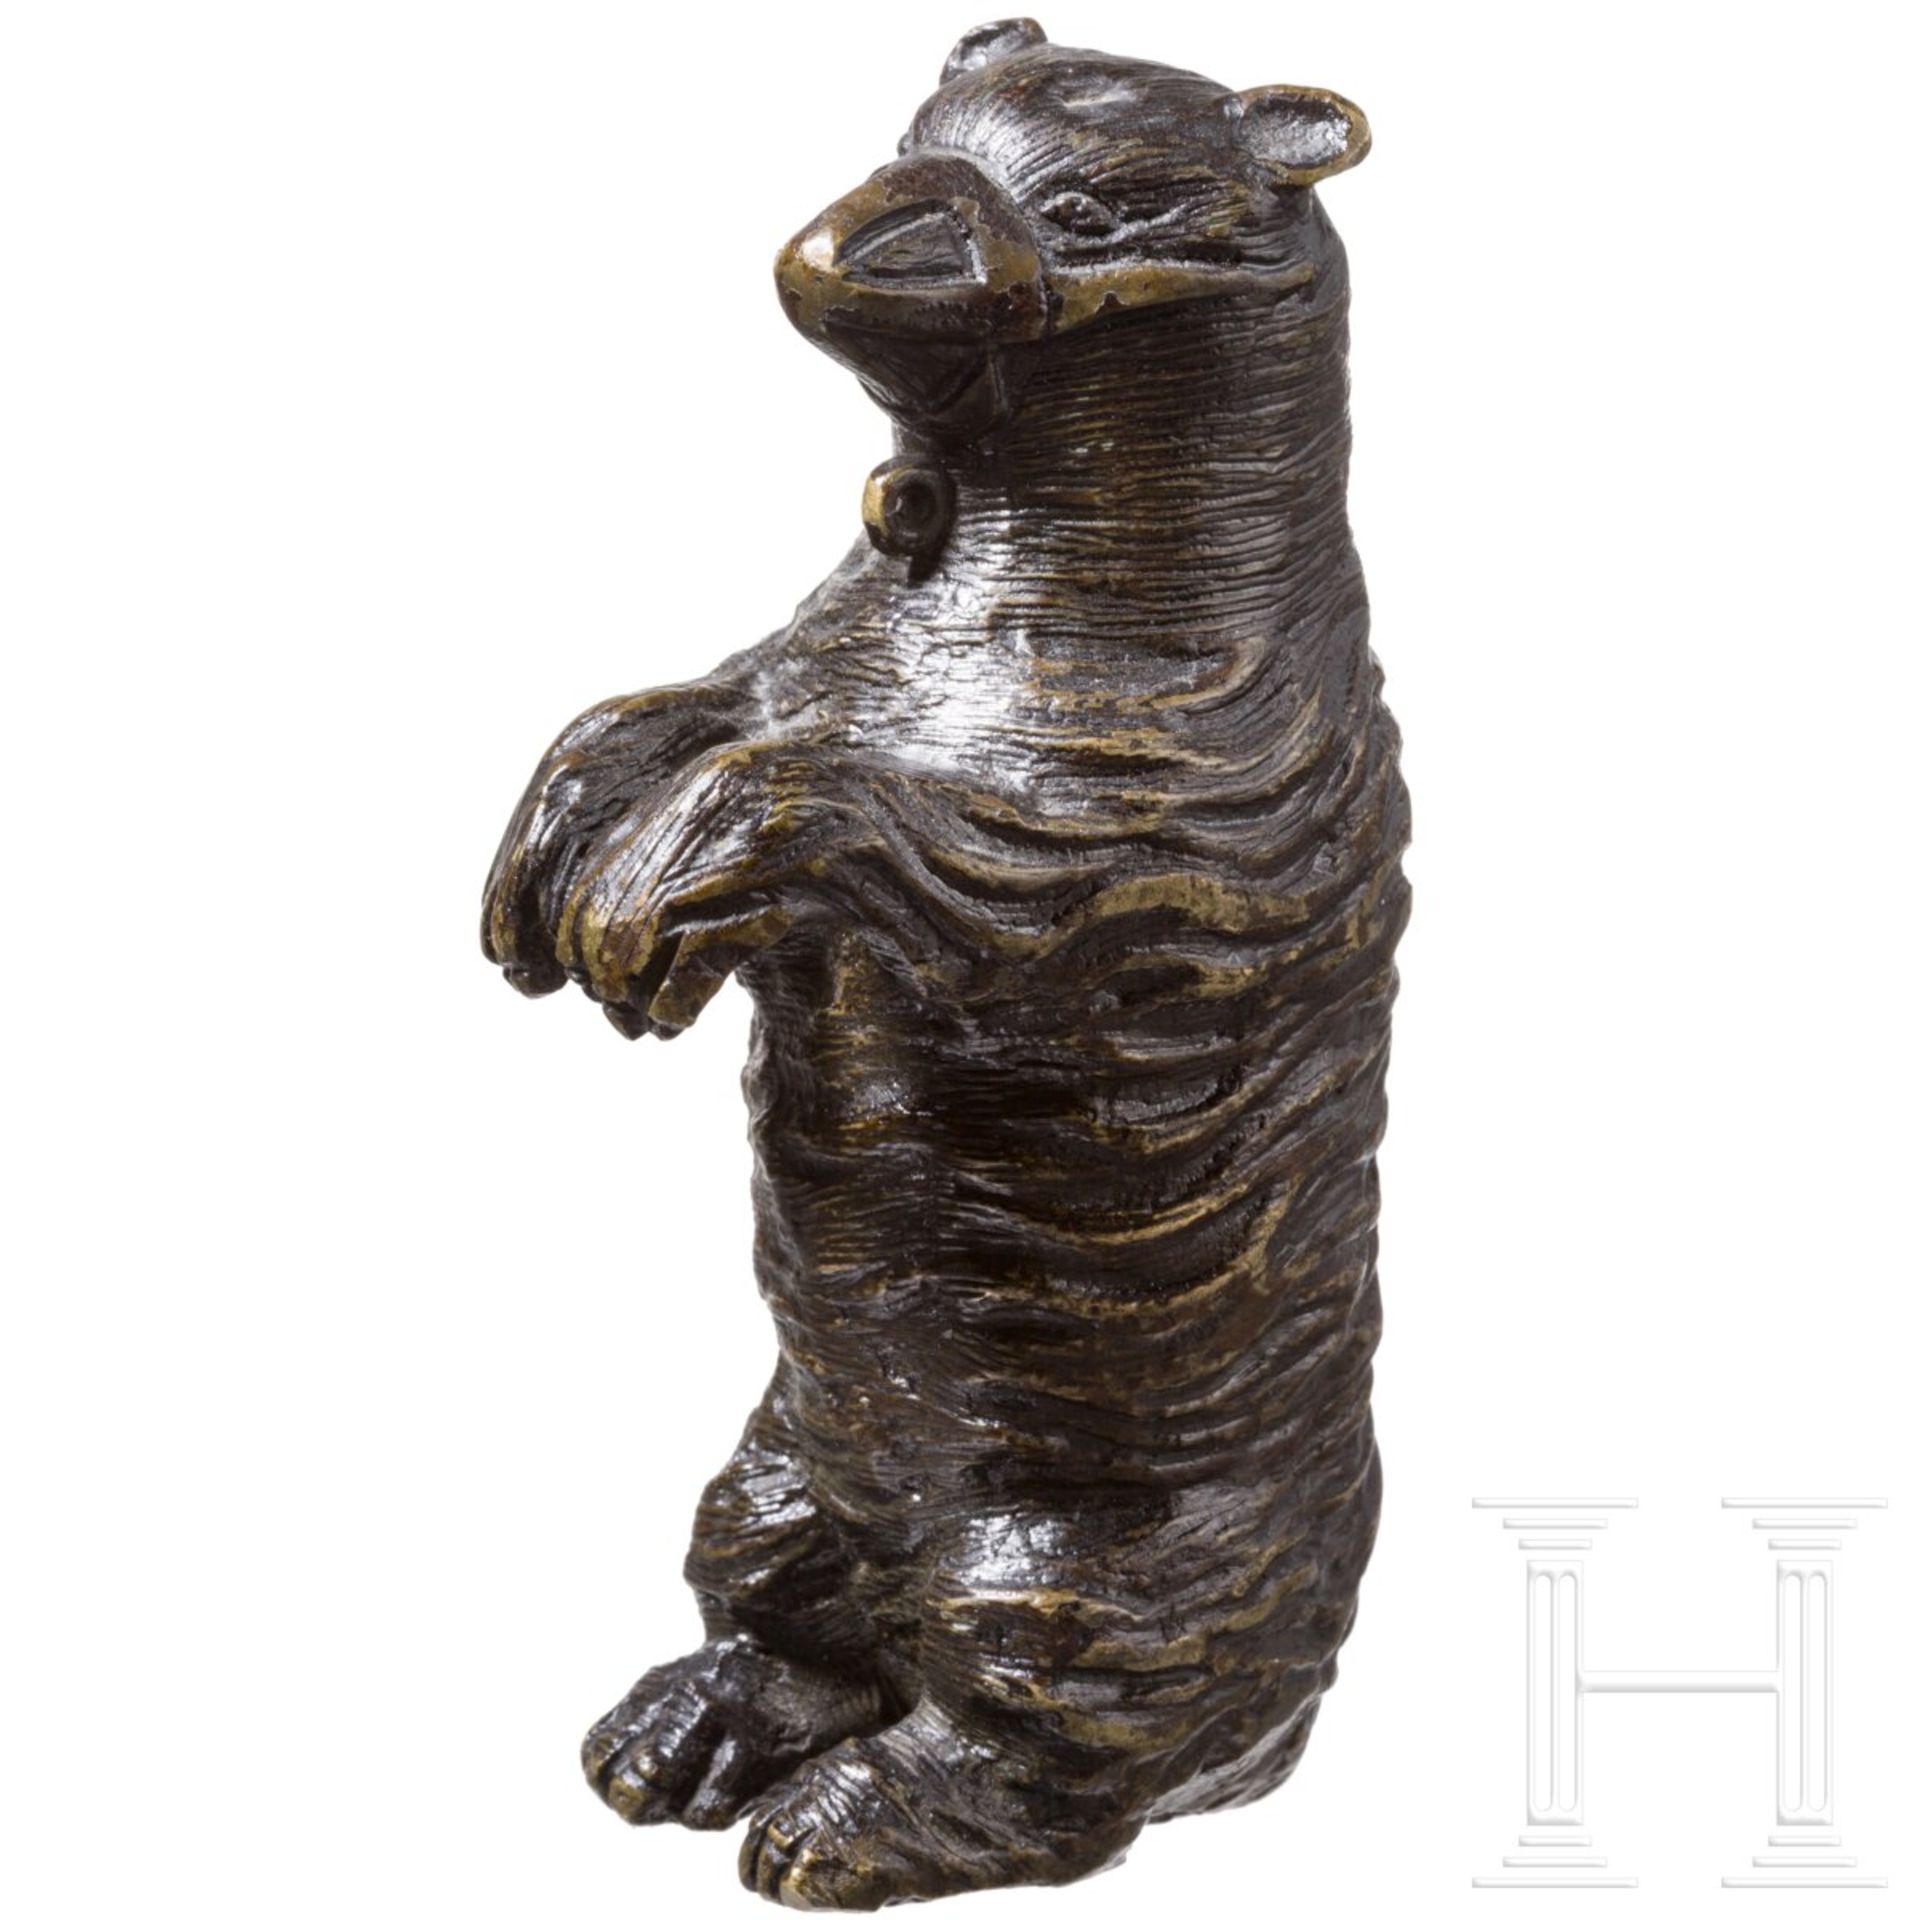 Gezähmter Bronzebär, Niederlande, um 1600